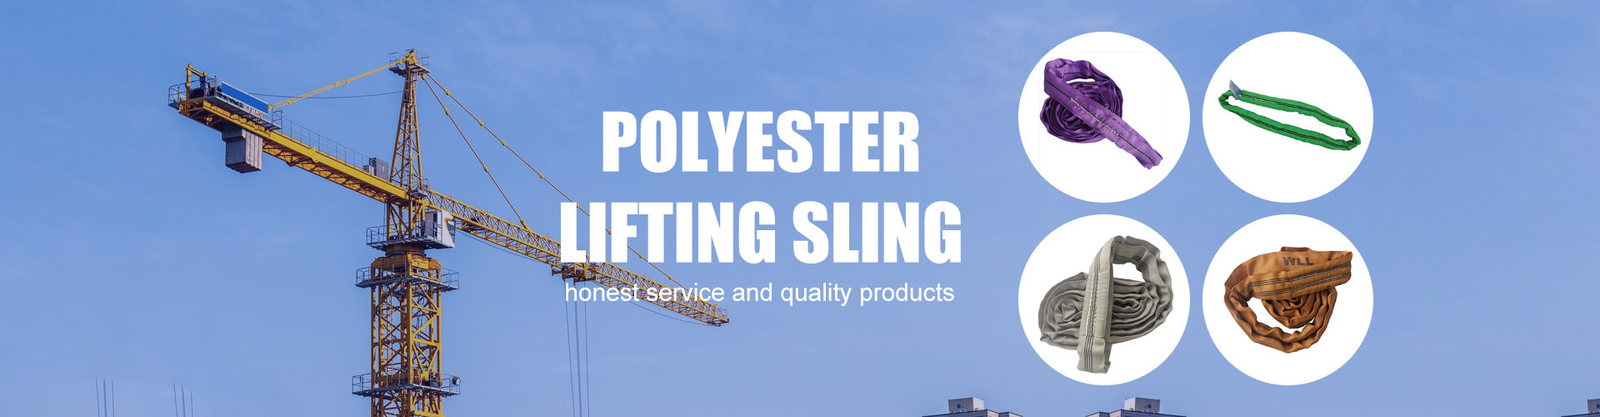 chất lượng Polyester nâng Sling nhà máy sản xuất